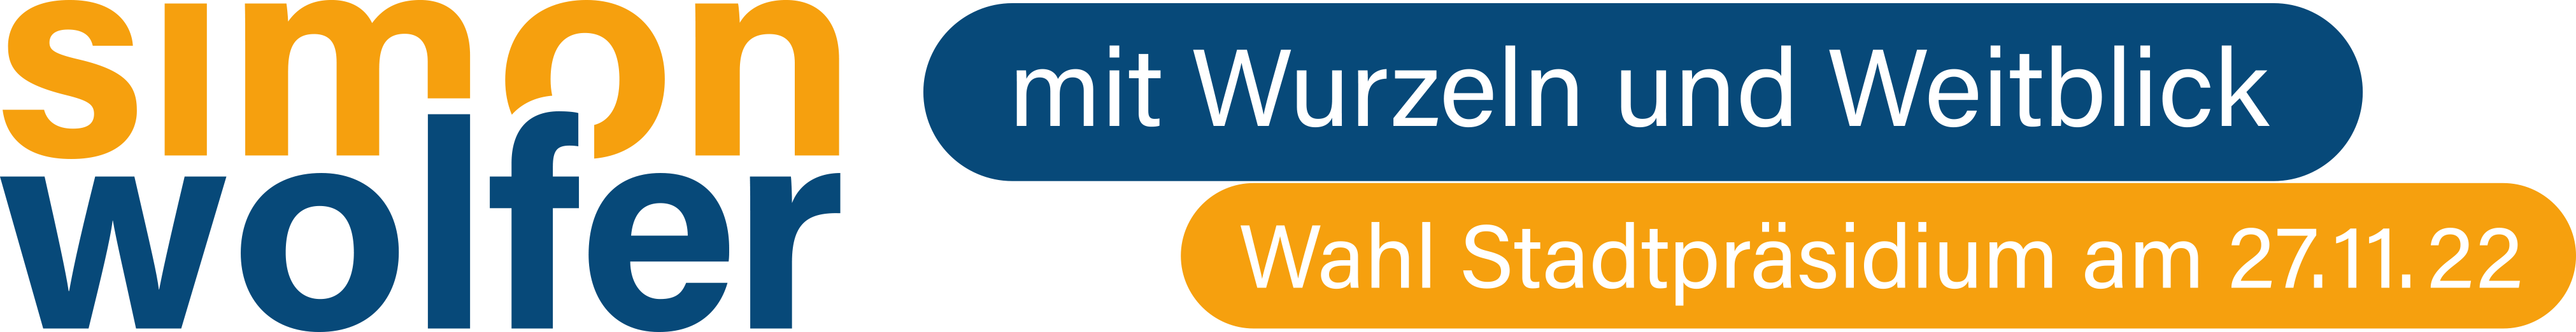 Simon_Wolfer_Logo_Zusatz_Bild_quer_cmyk